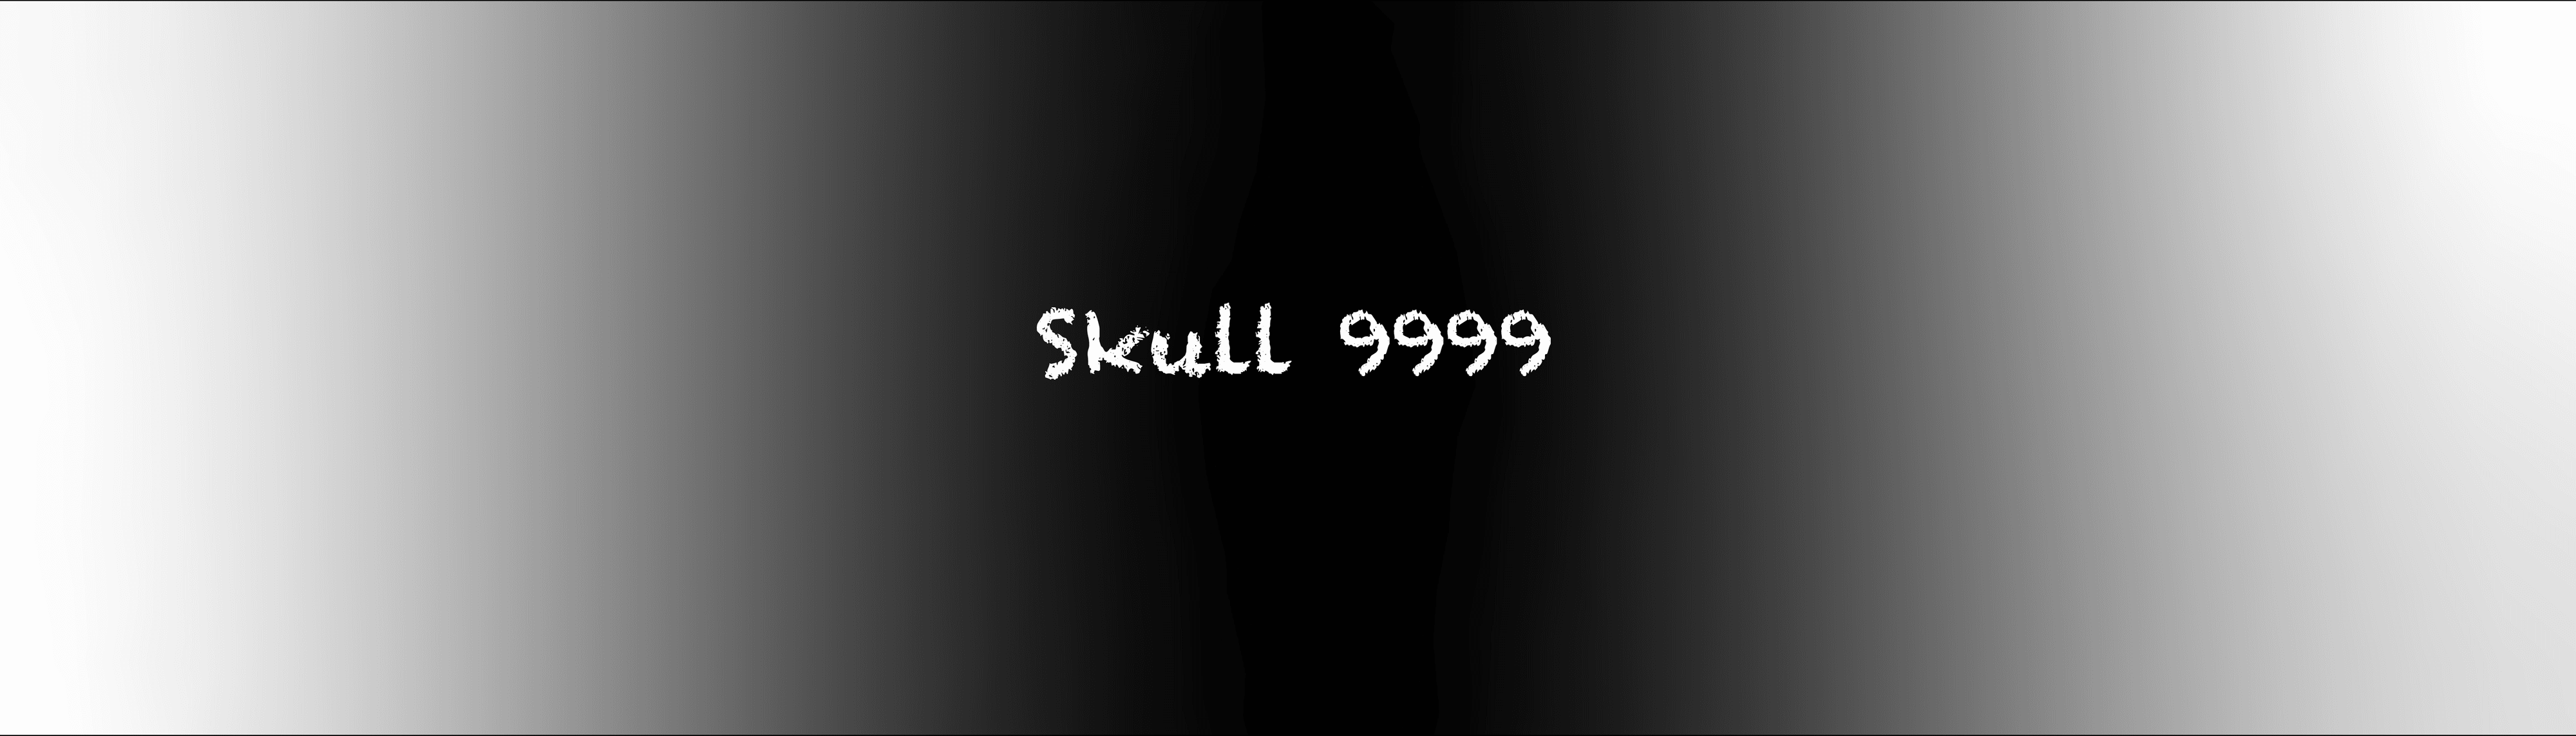 skull9999 banner